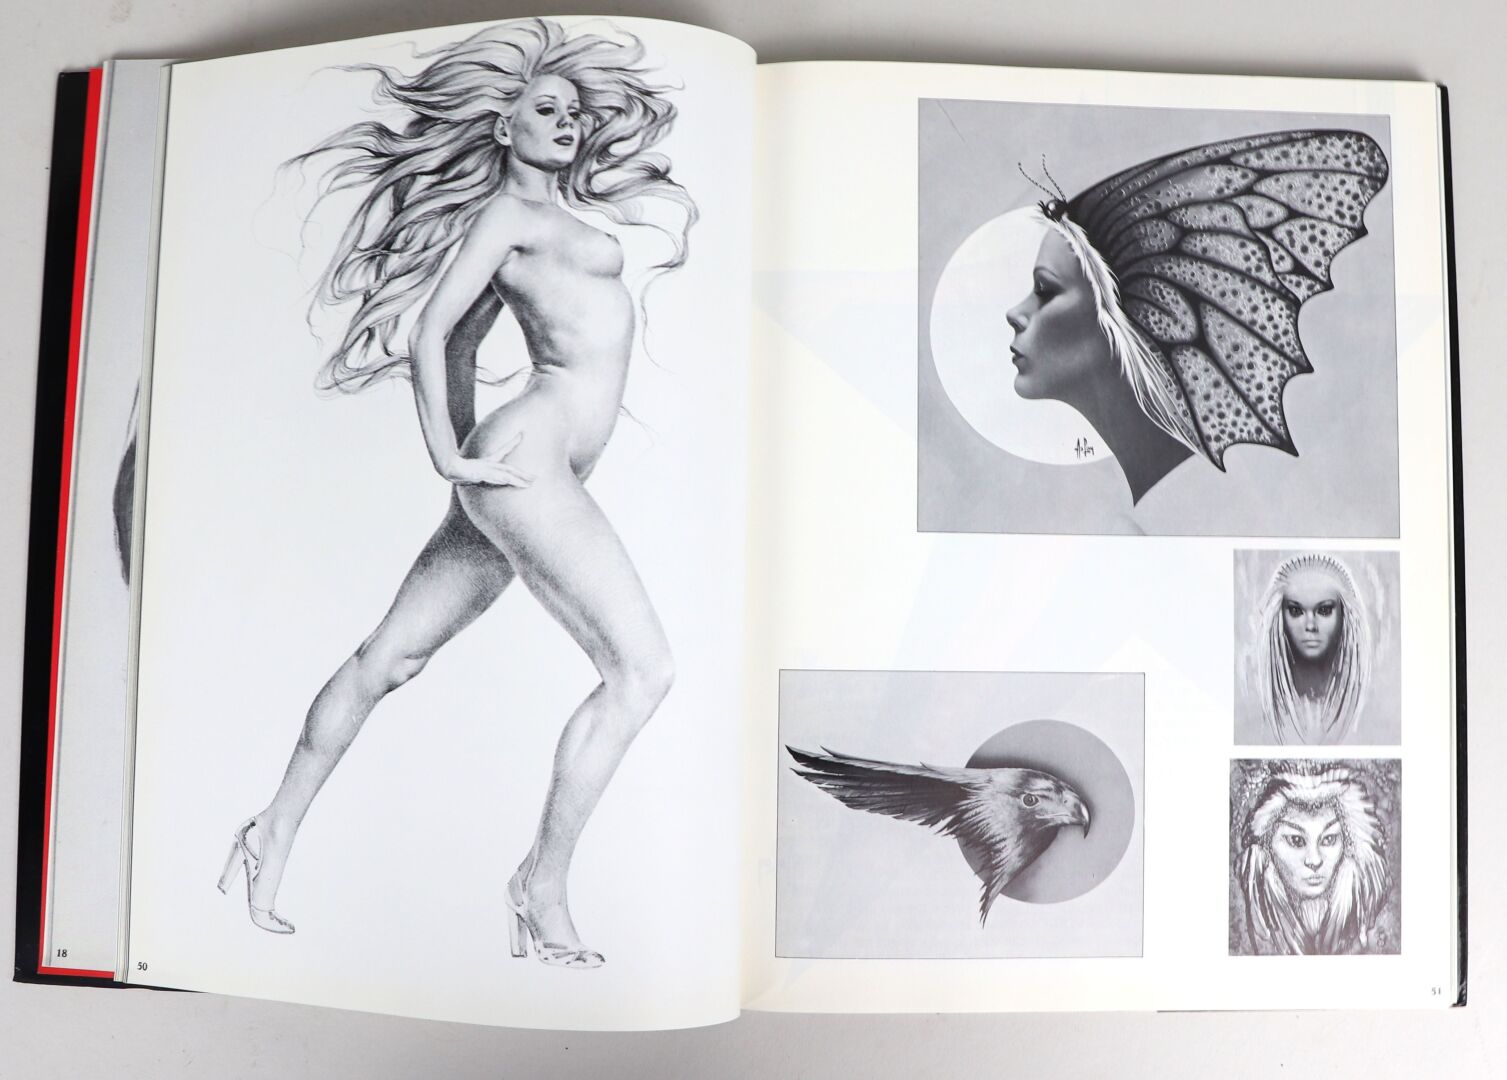 ASLAN (1930-2014). - Ensemble de cinq ouvrages consacrés à l'artiste comprenant : [...] - Image 6 of 7